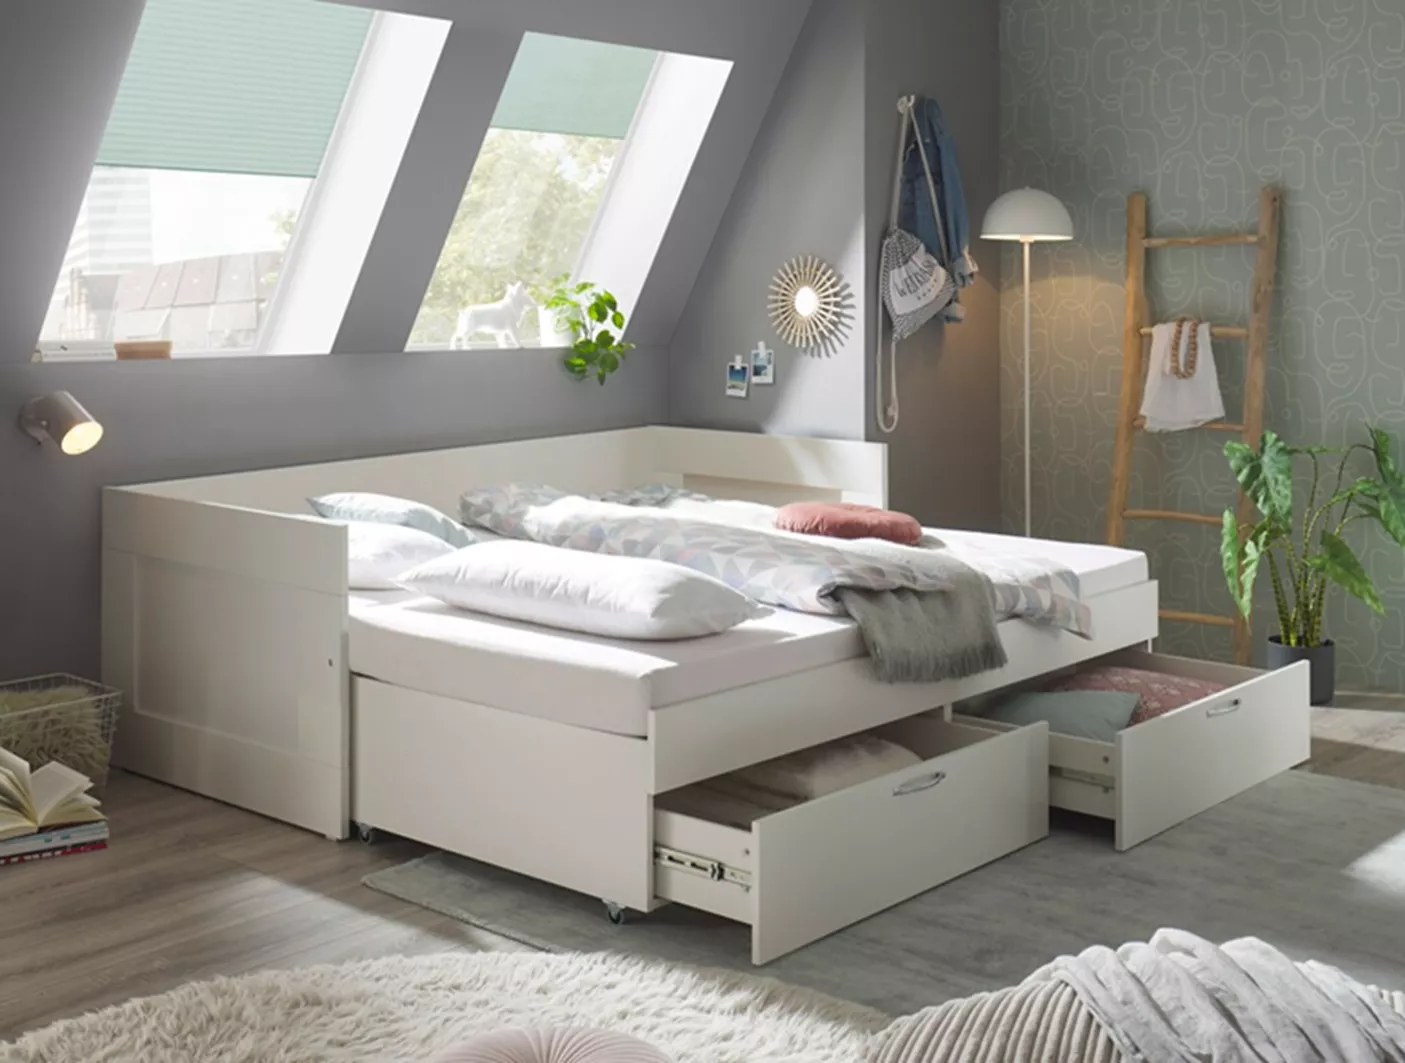 Кровать как в IKEA - где купить недорого в Санкт-Петербурге?